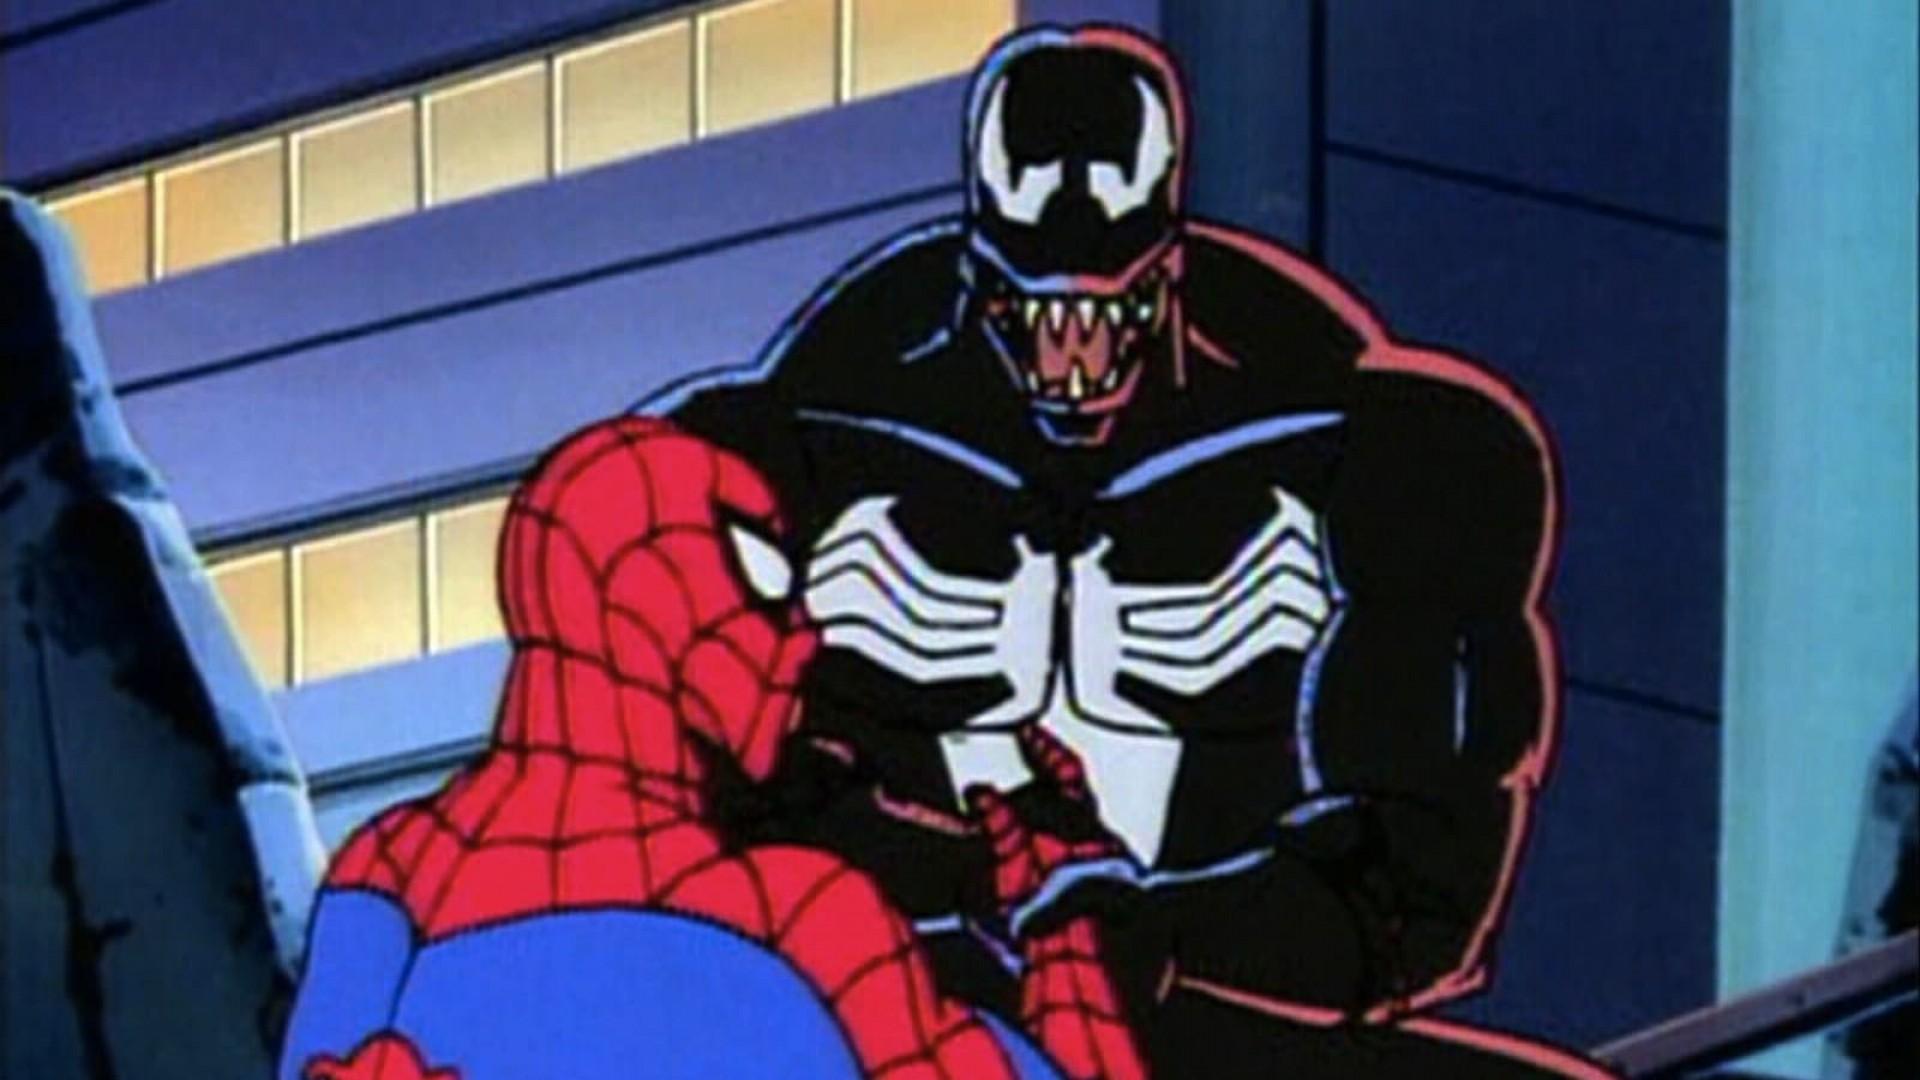 Spider-Man: The Venom Saga